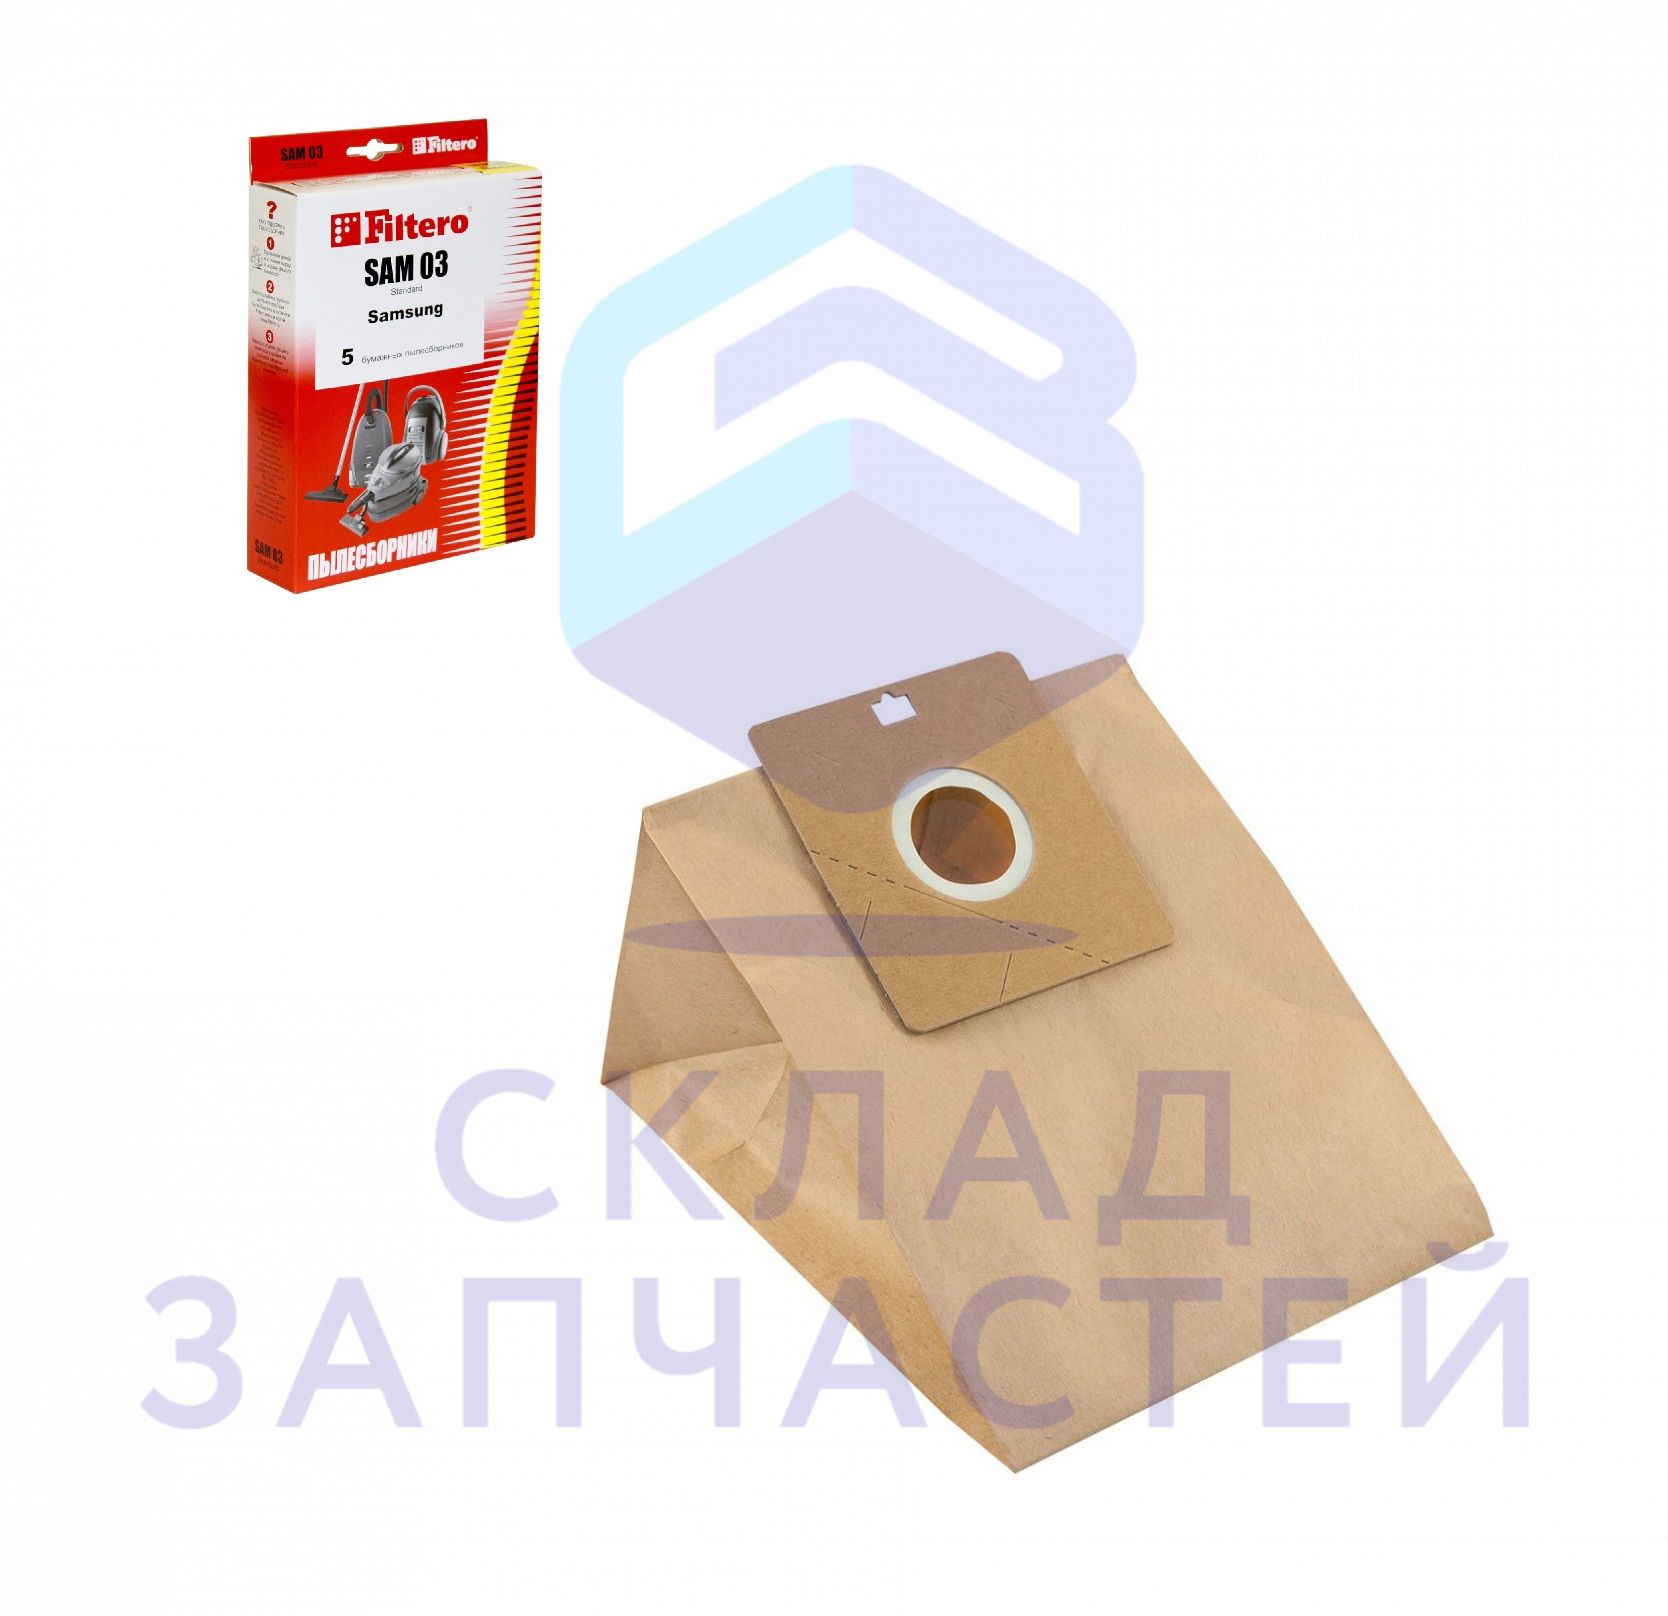 DJ69-00420B Samsung аналог (Filtero), мешки-пылесборники бумажные для пылесоса, набор: 5 шт.